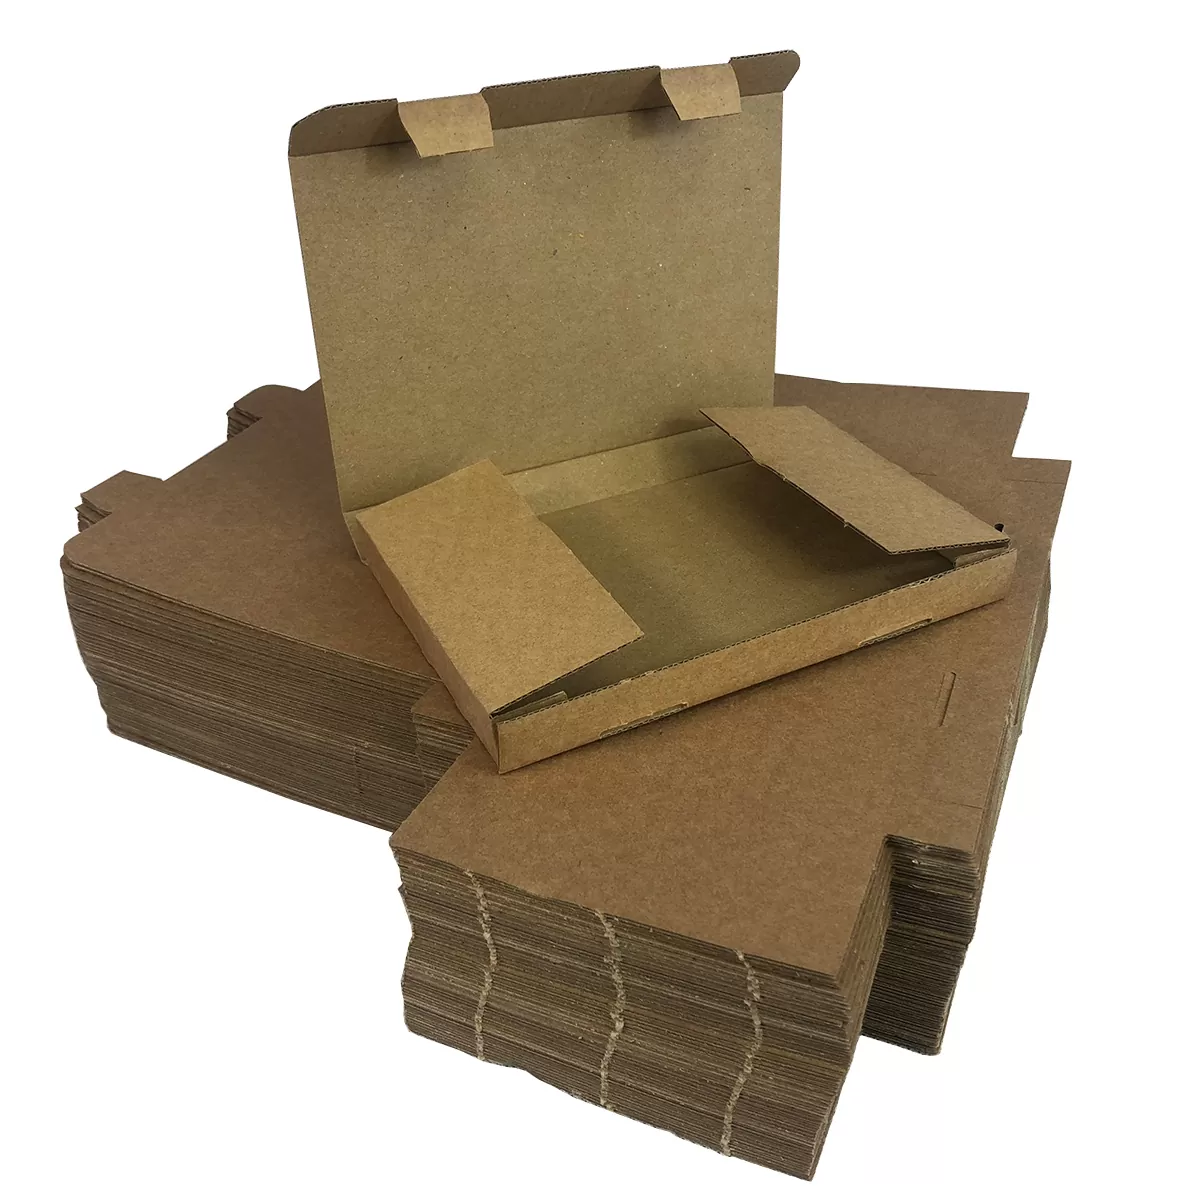 Envelope Boxes